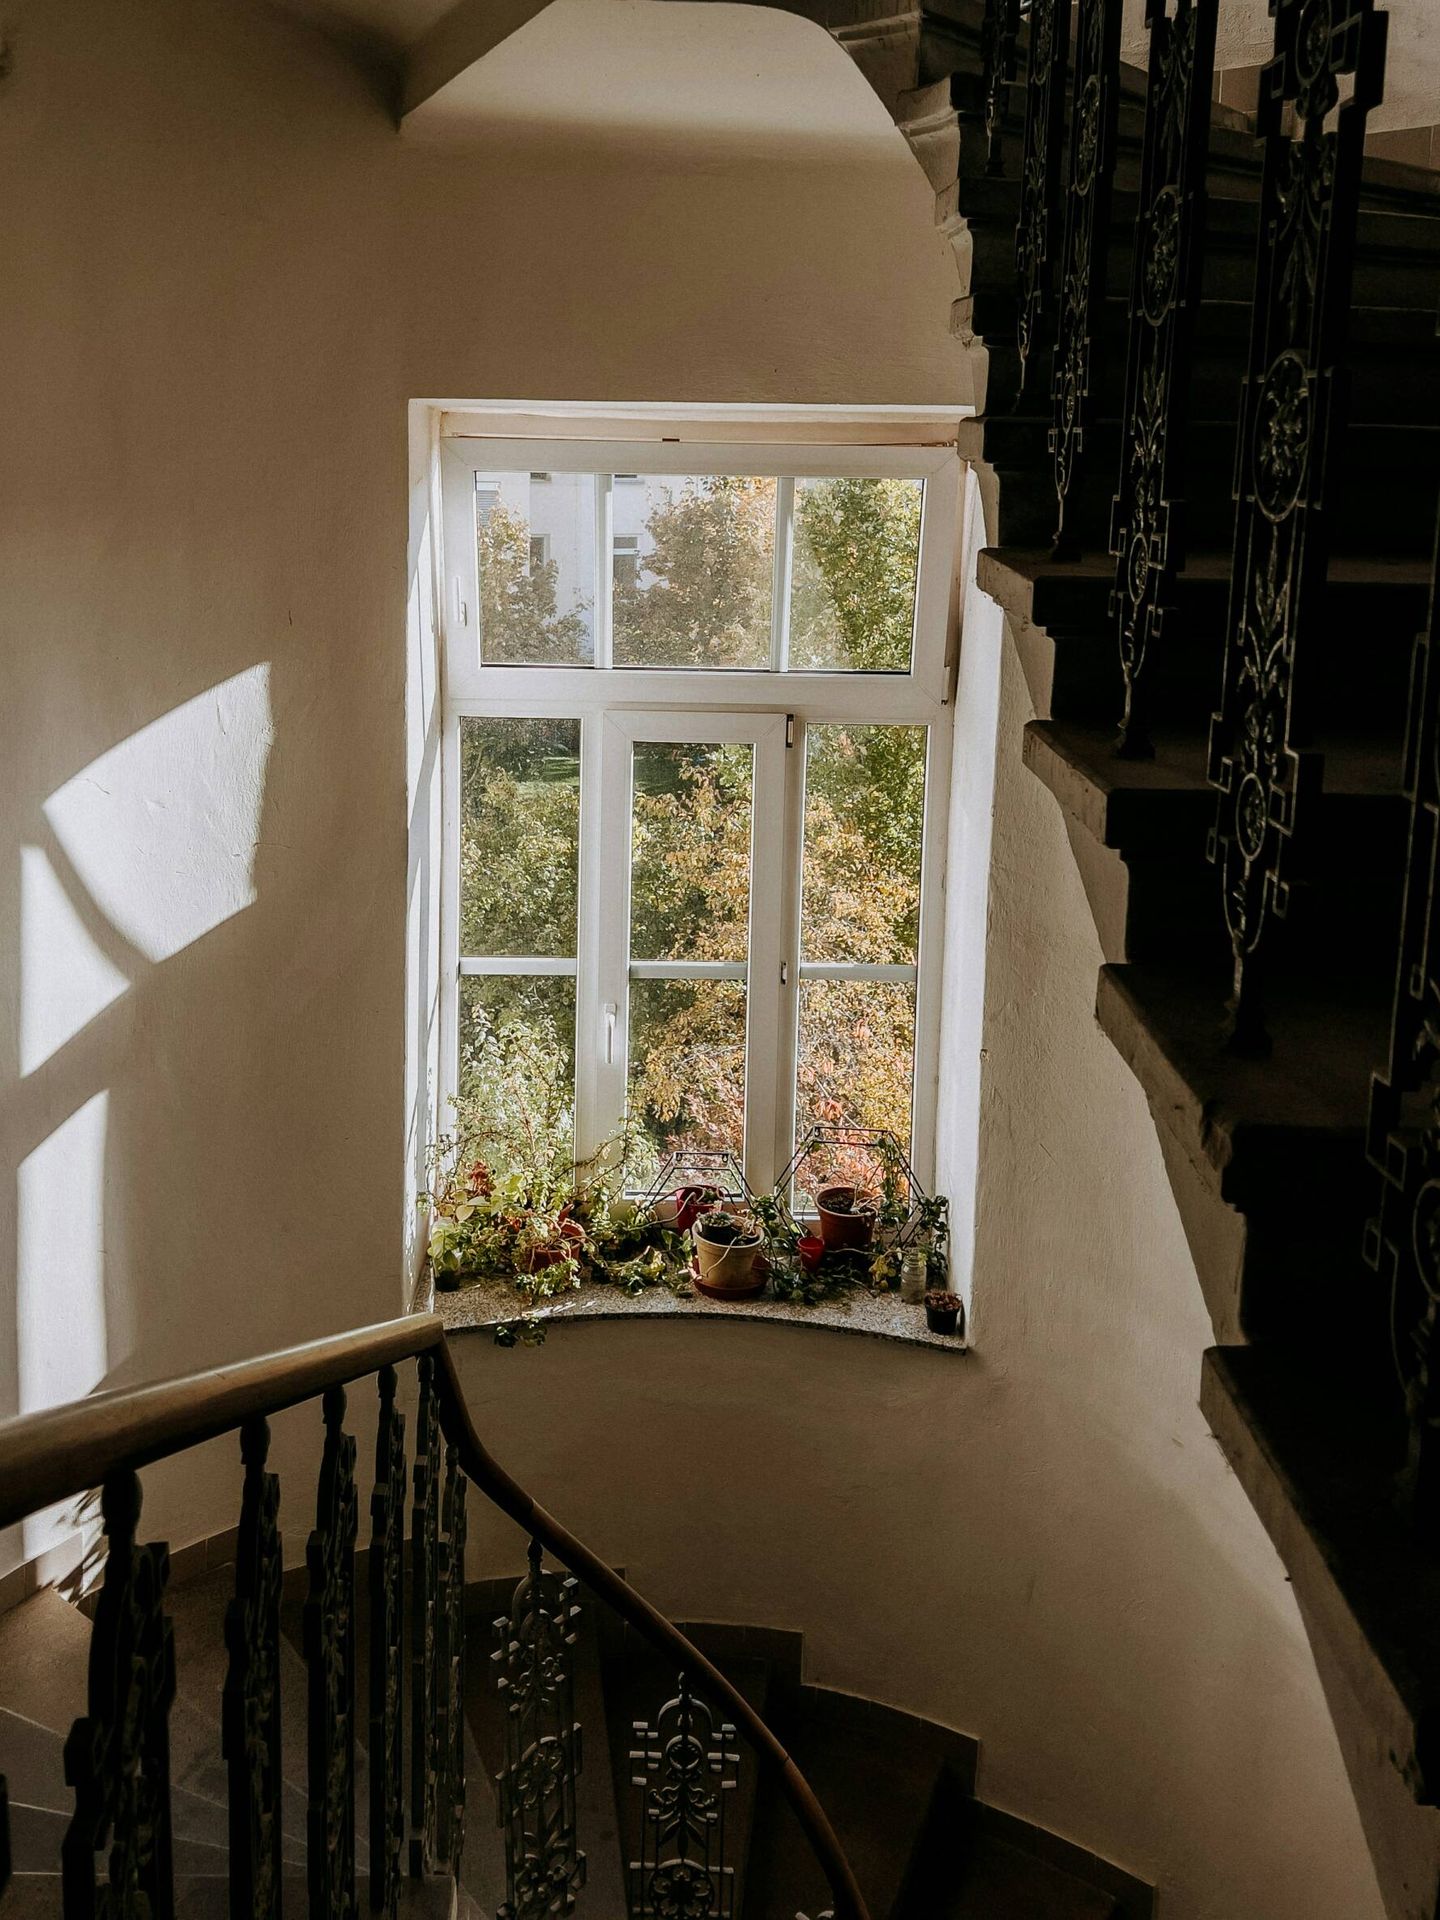 Pulverizar fragancias florales en las cortinas crea la sensación de un ventanal que da a un jardín o está repleto de flores. (Unsplash/David Dvoracek)